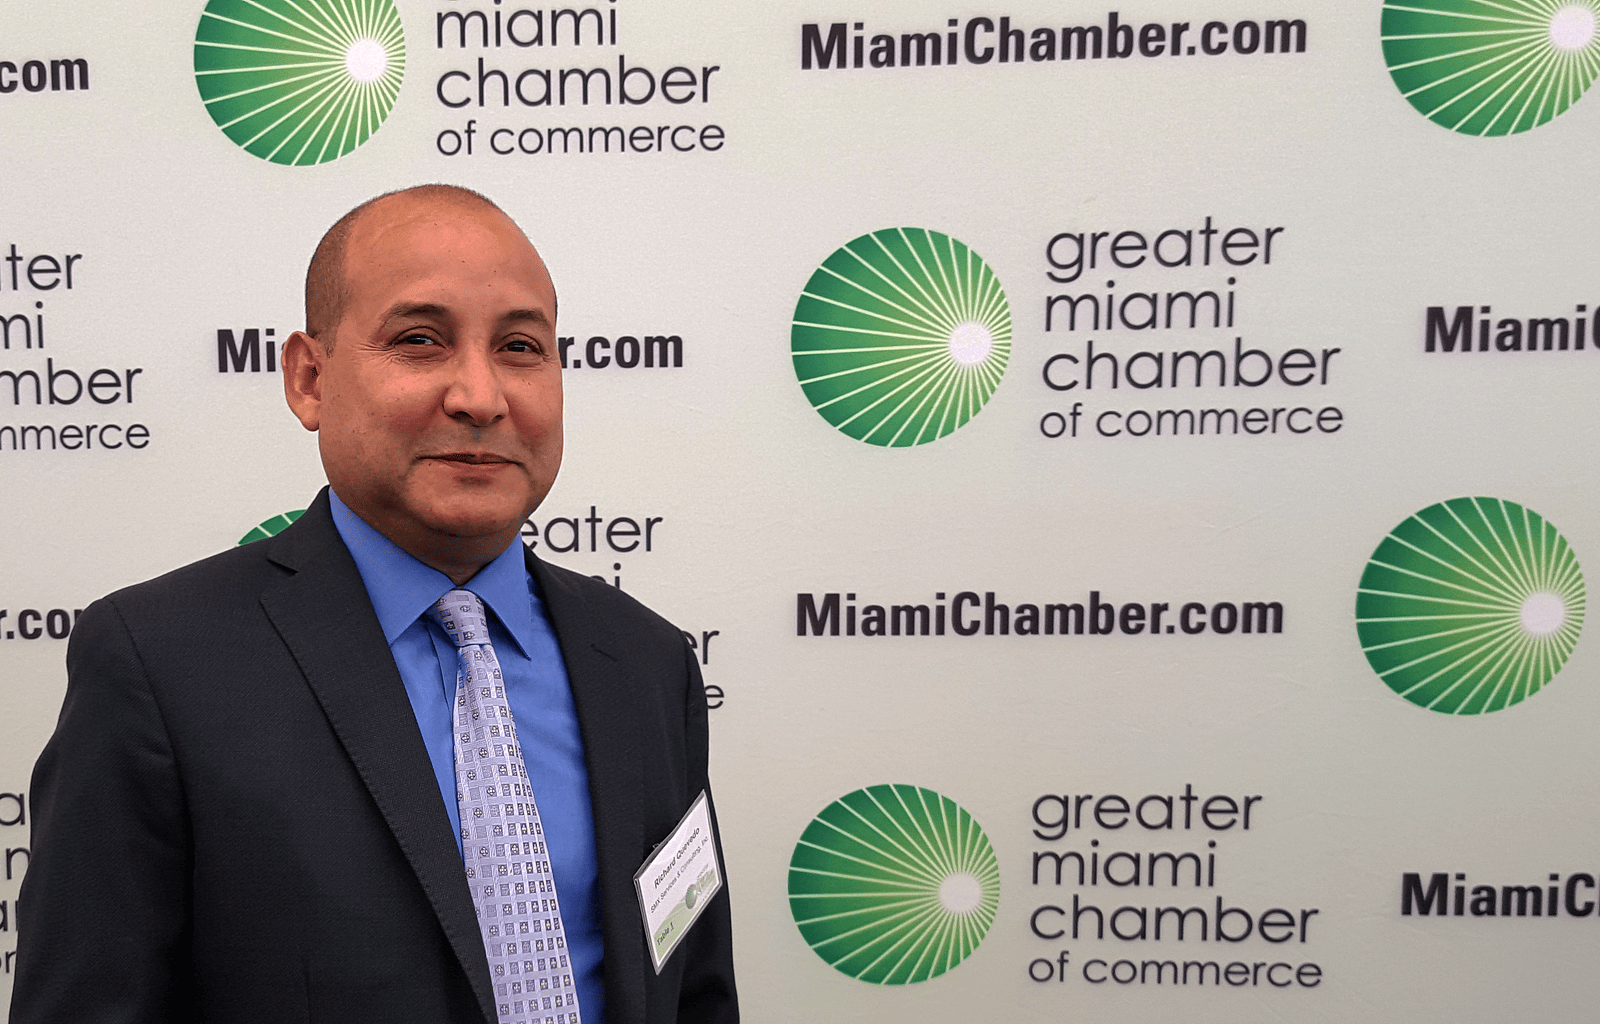 Richard Quevedo en El Nuevo Herald: “Cómo manejar un negocio global y local desde Miami”